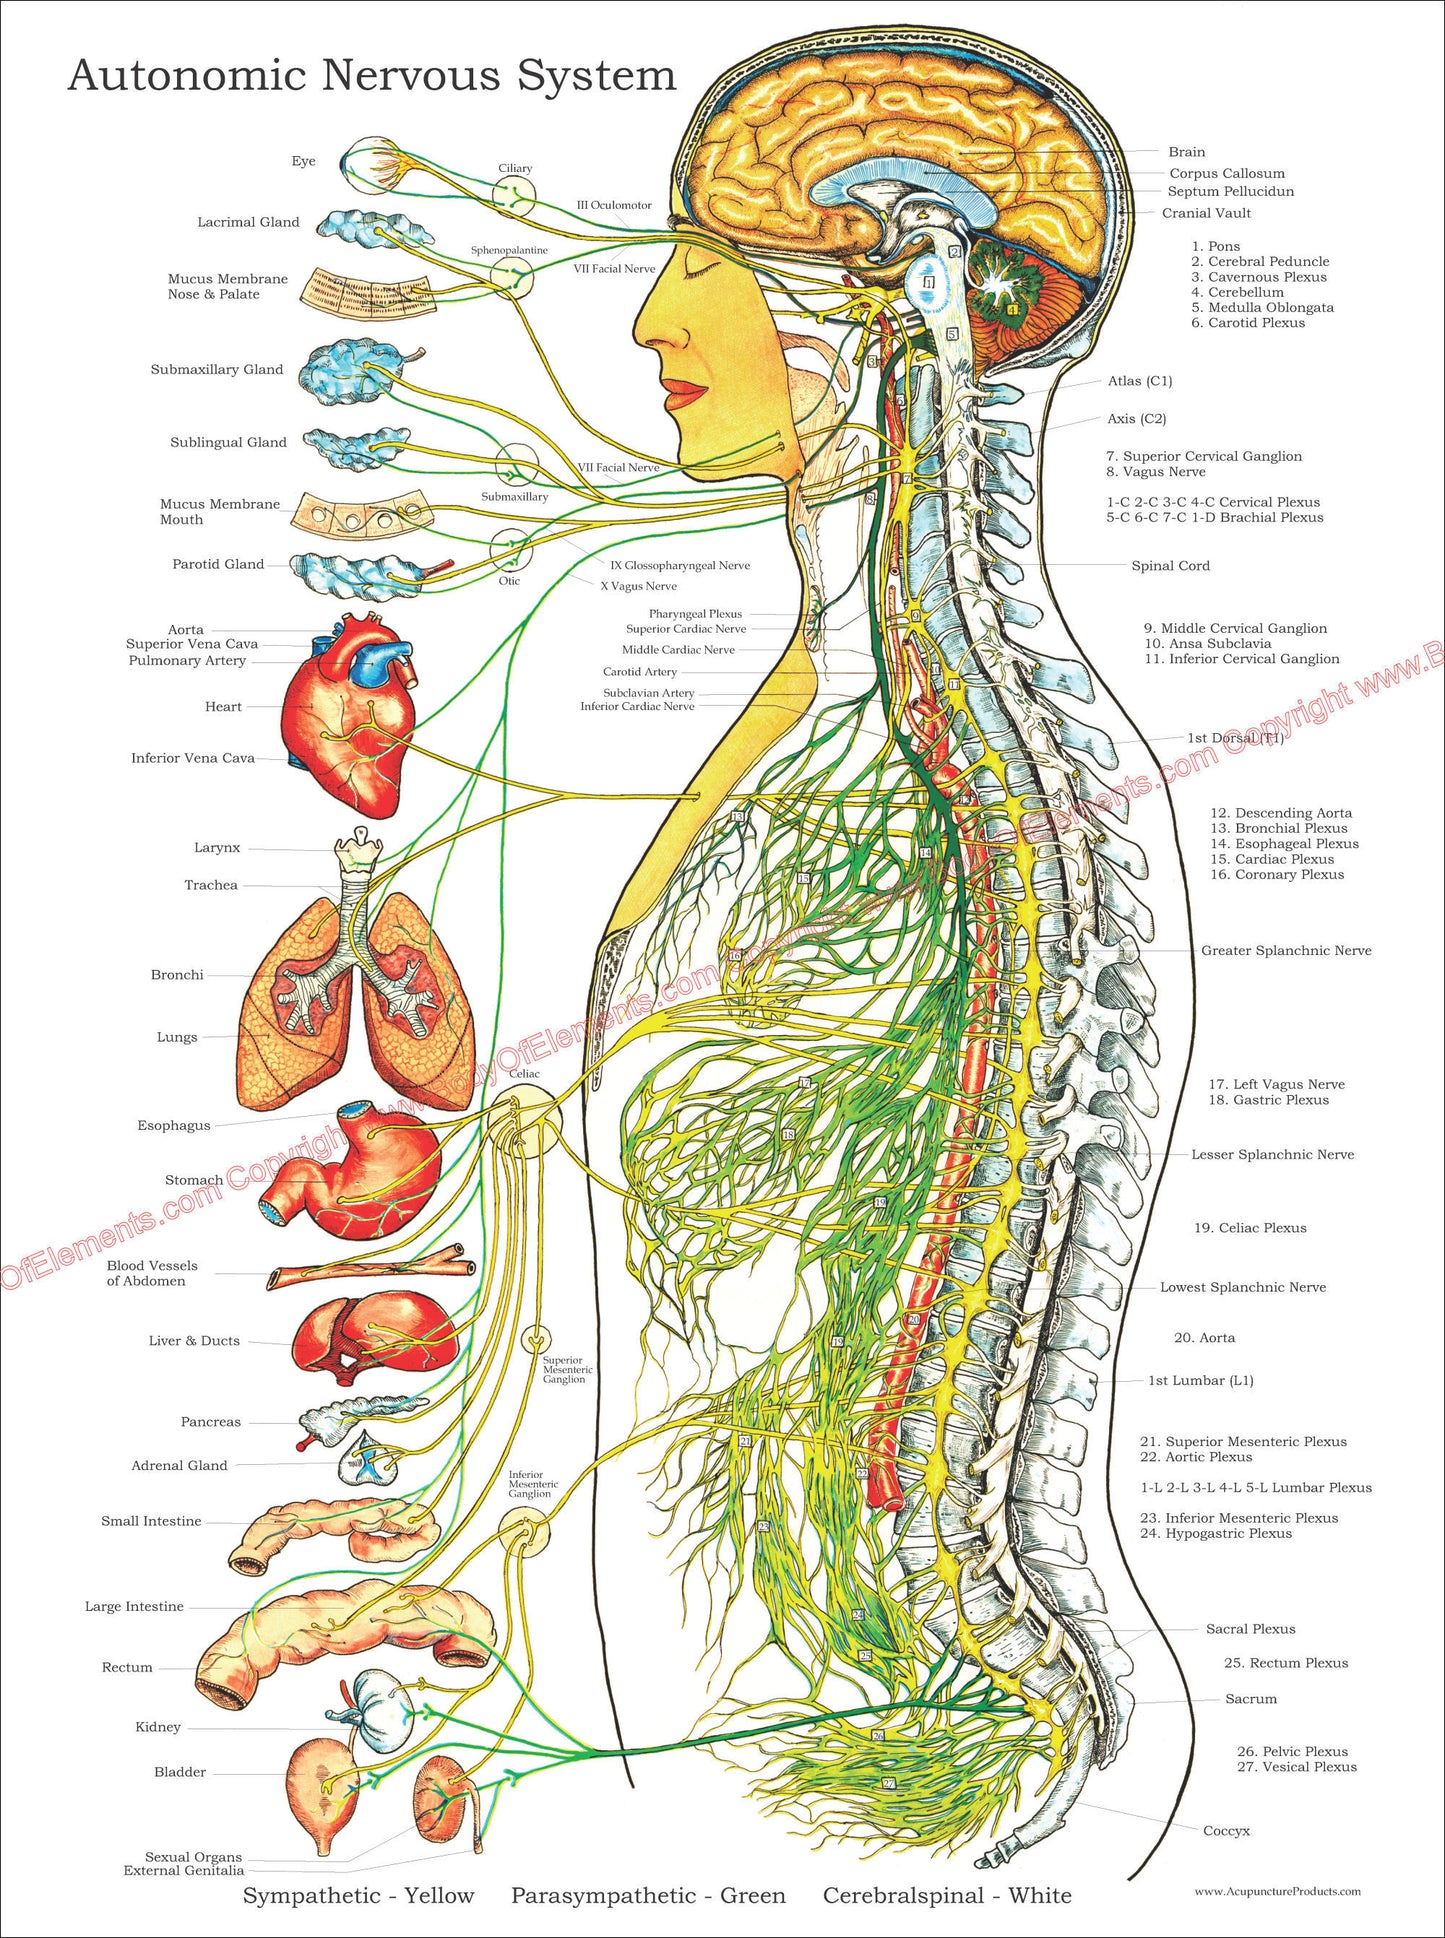 Autonomic nervous system poster